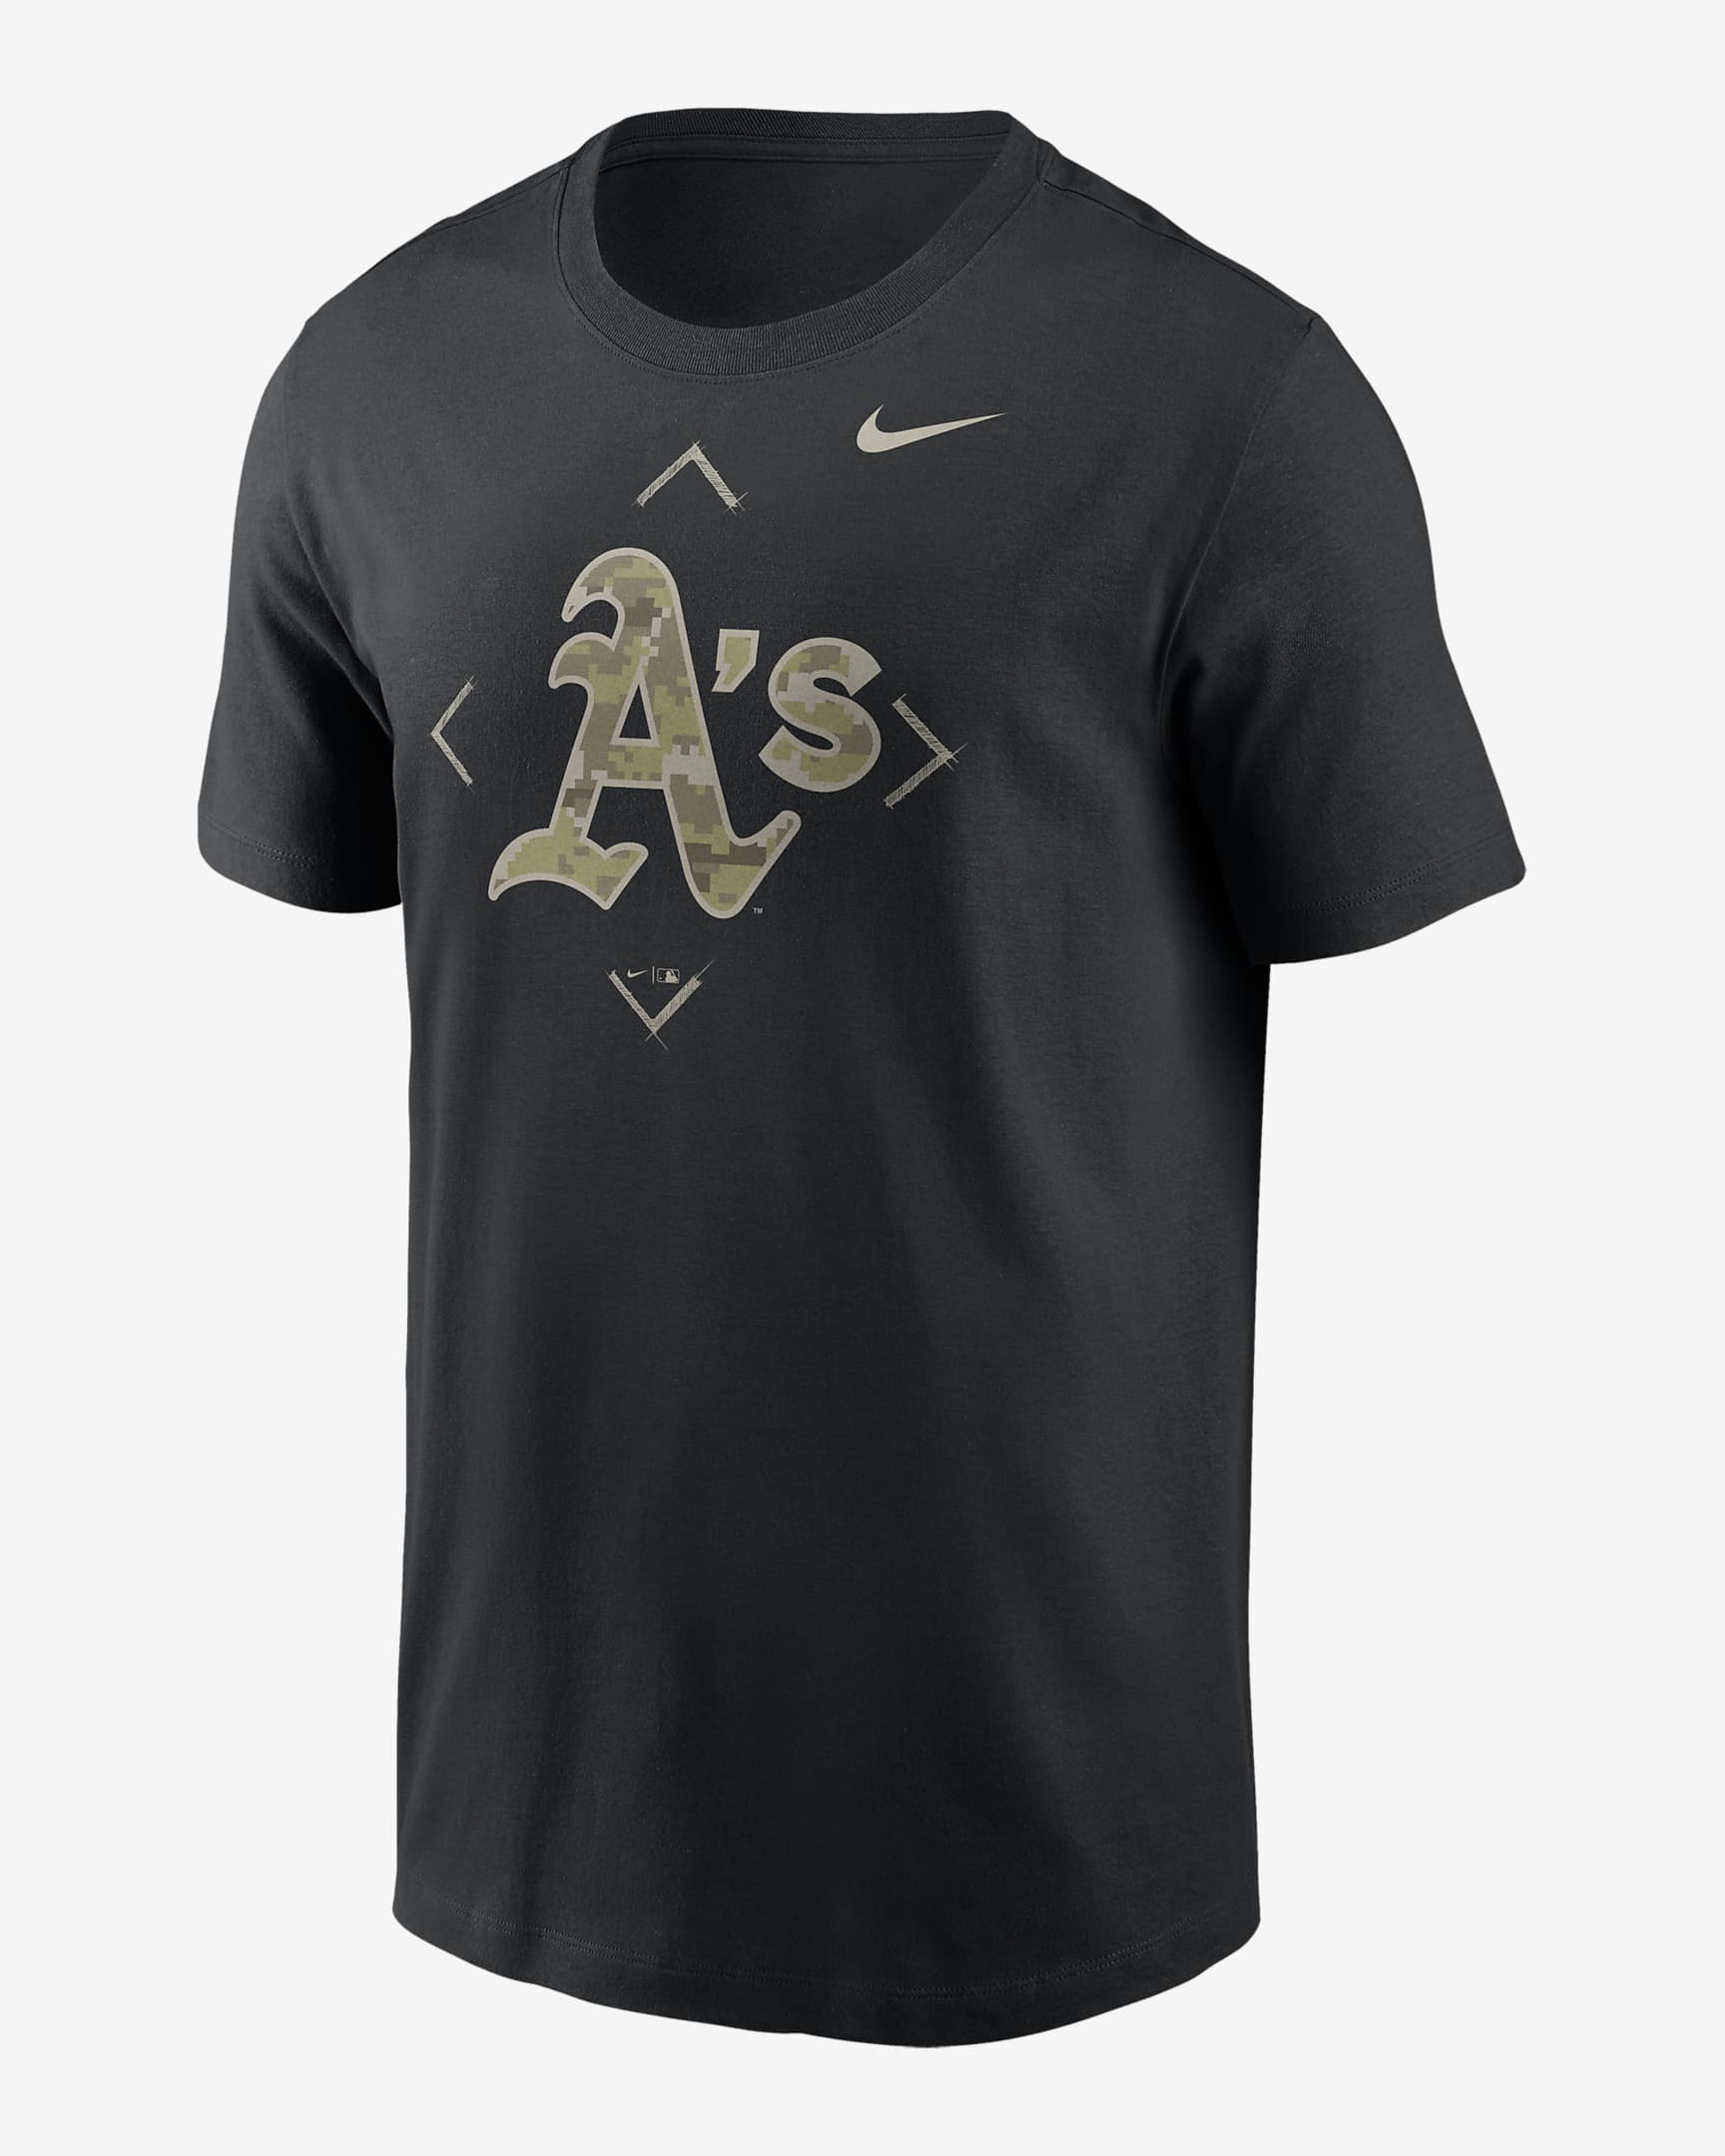 Playera Nike de la MLB para hombre Oakland Athletics Camo Logo. Nike.com